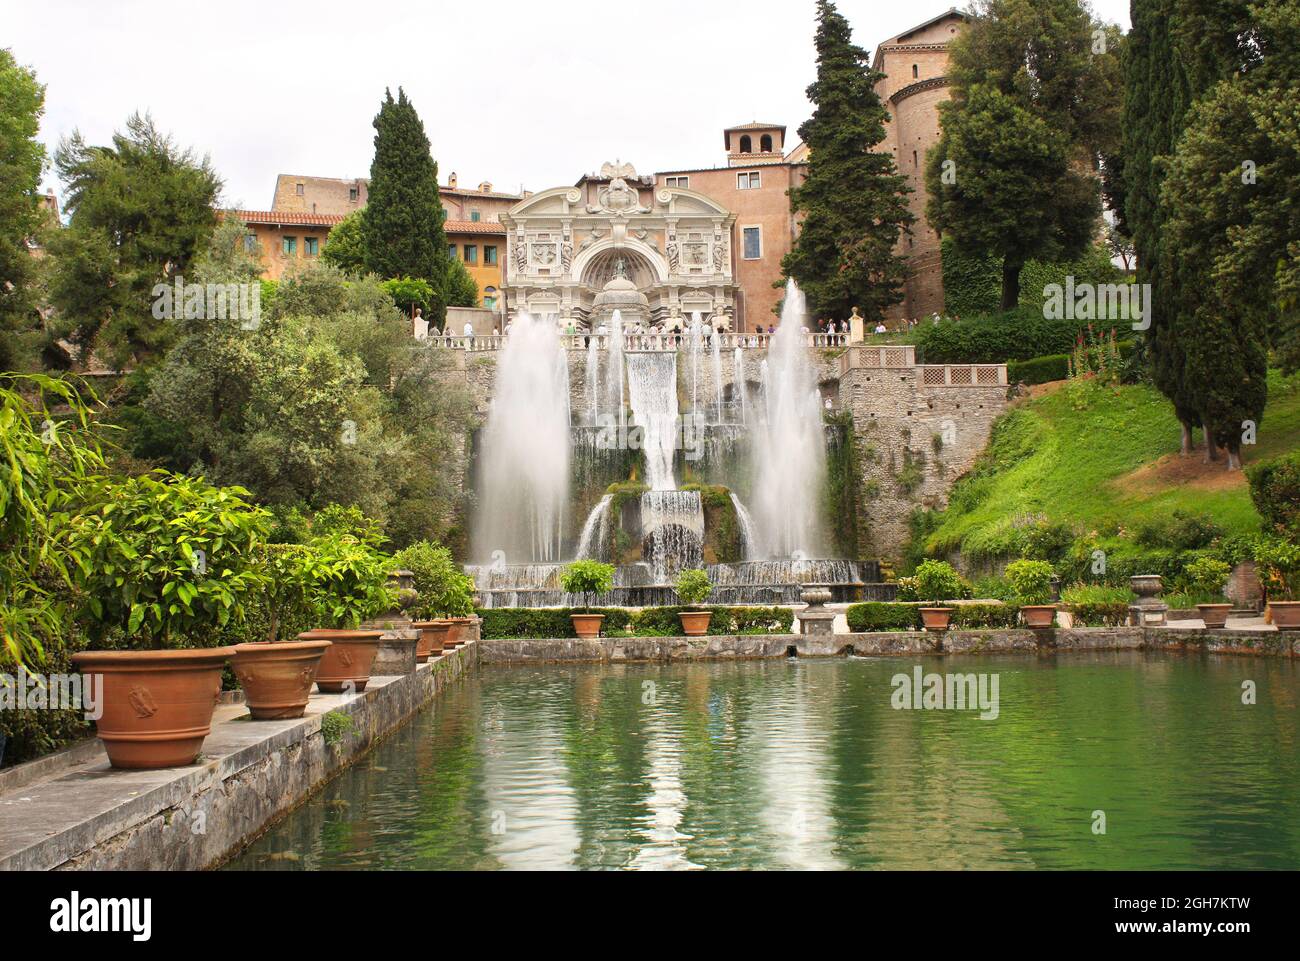 Fontaine dell'organo dans les jardins de Villa d'Este, Tivoli, Italie. UNESCO liste du patrimoine mondial Banque D'Images